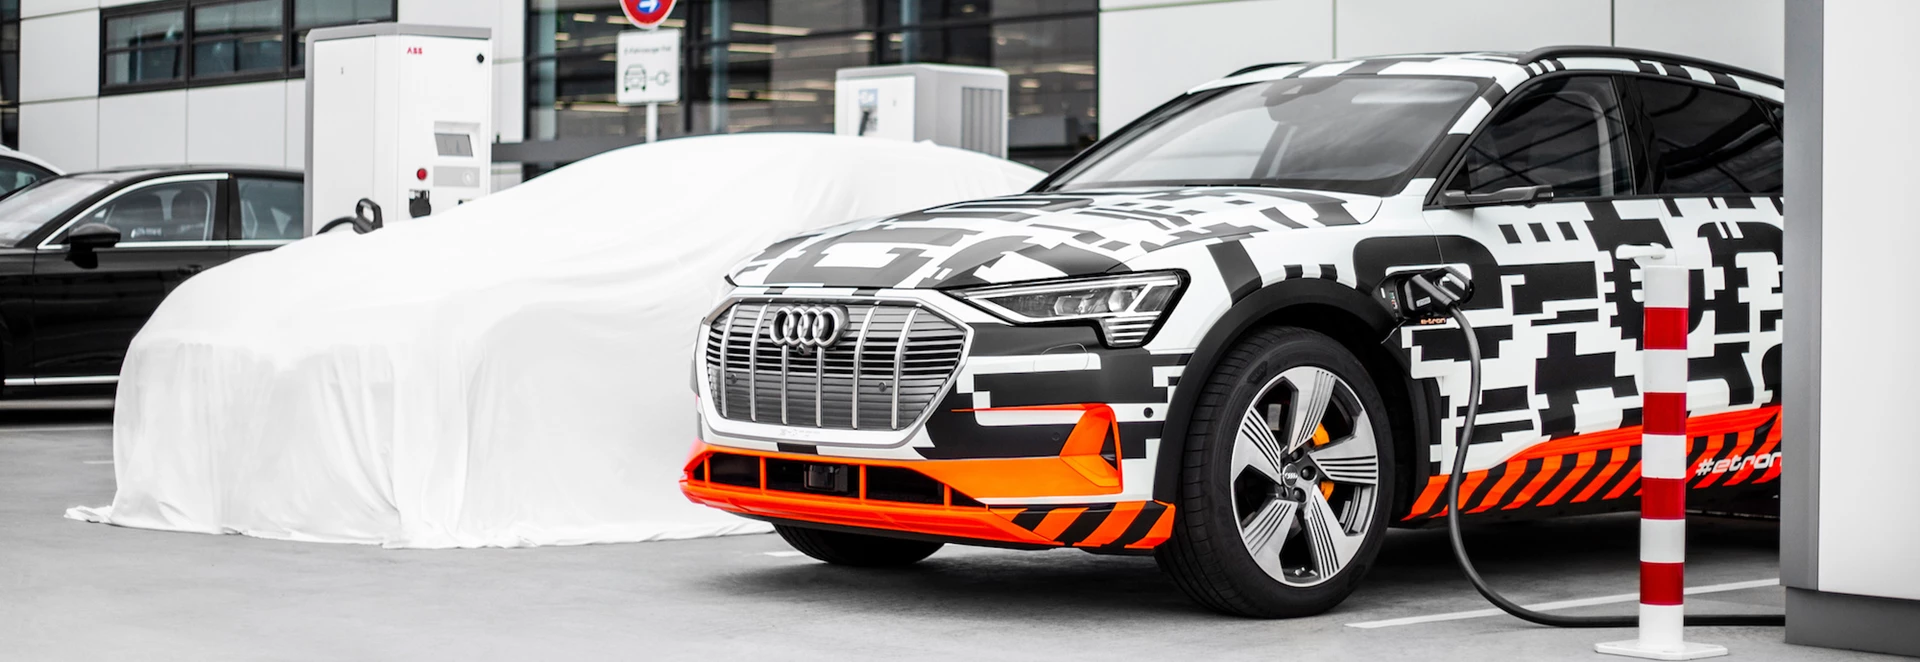 Audi announces Charging Service for e-tron launch